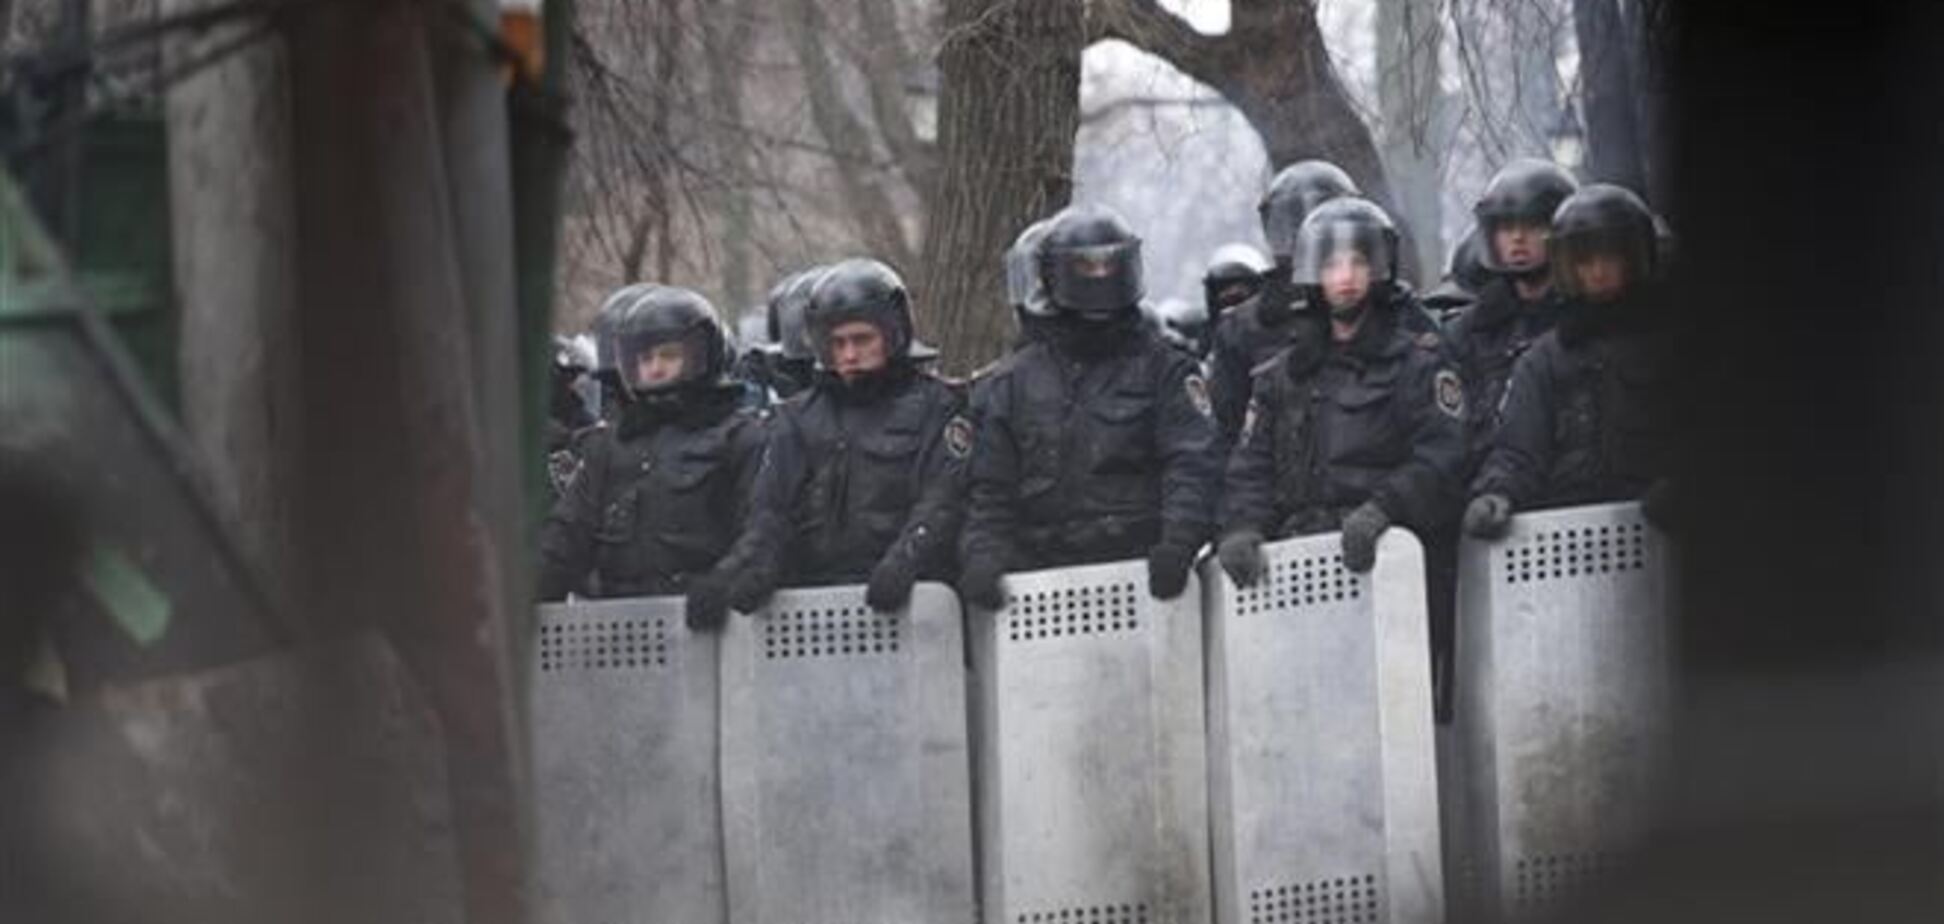 Активісти будуть читати новини про Евромайдан силовикам